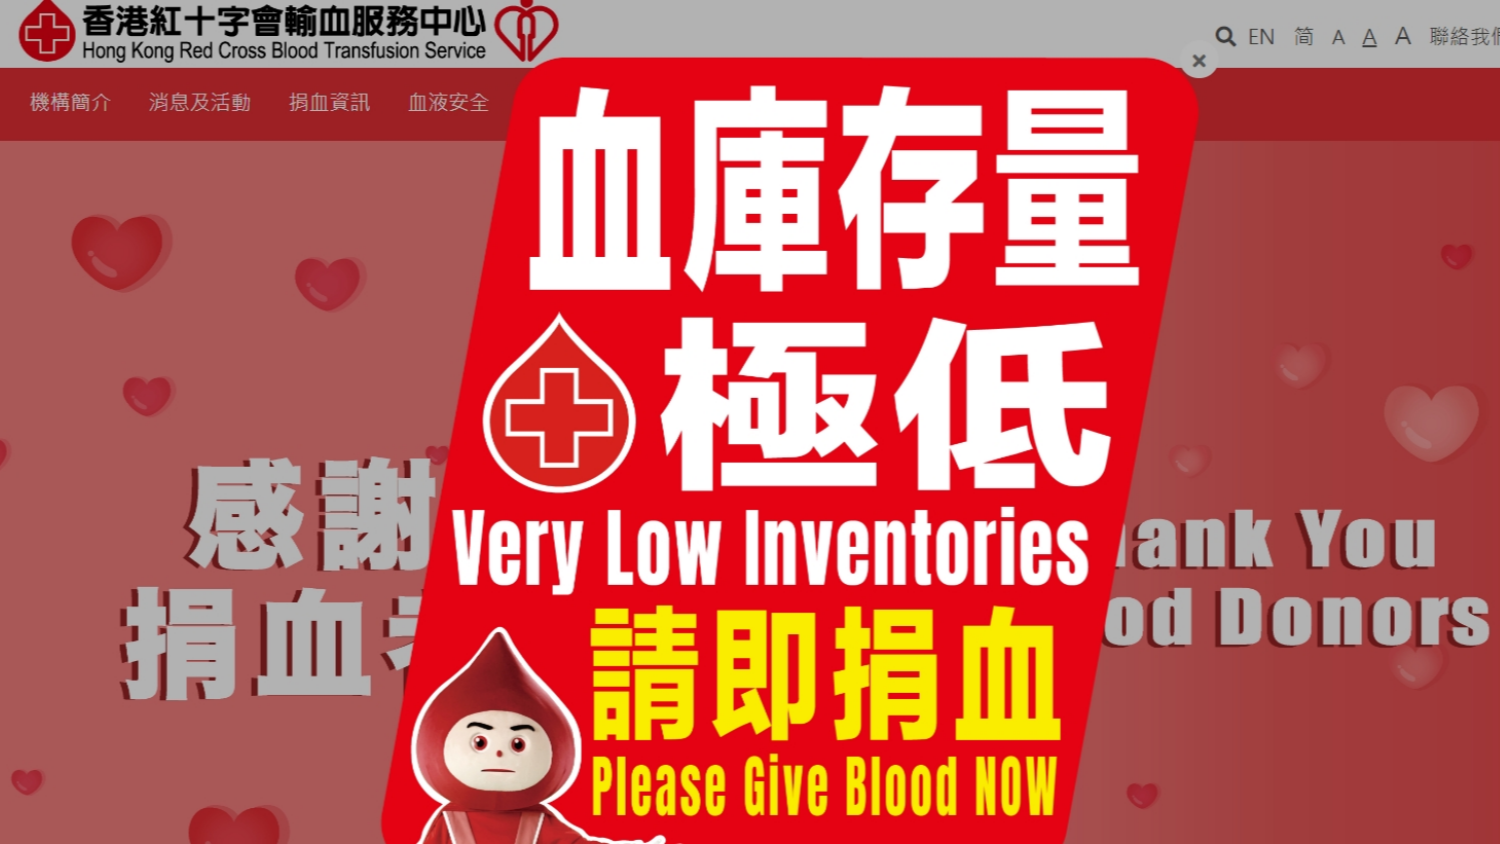 紅十字會輸血服務中心指血庫存量極低呼籲捐血